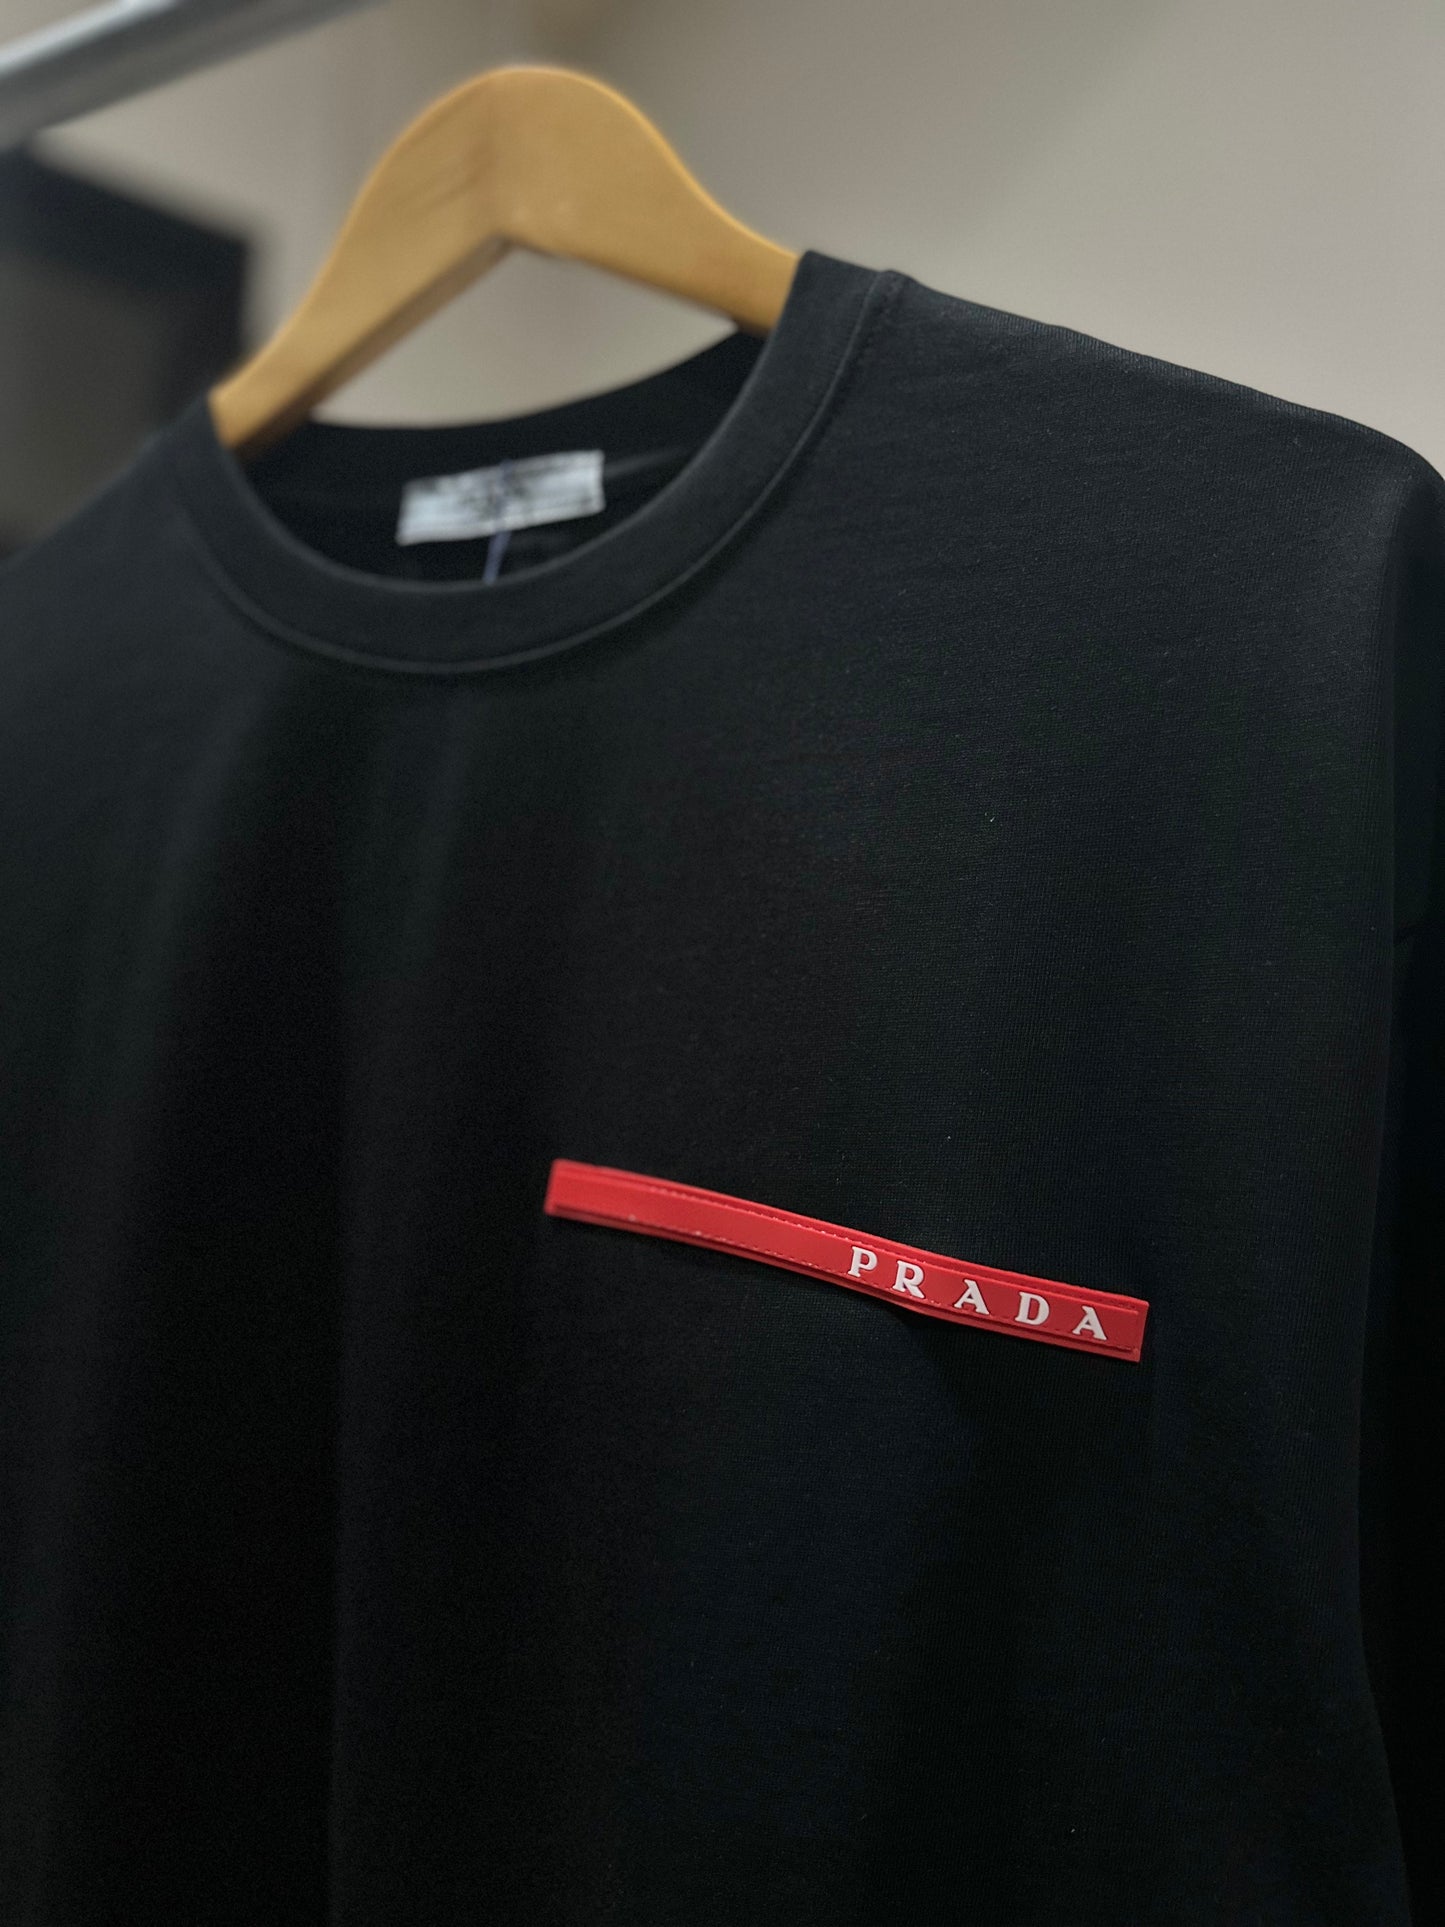 Prada - Luna Rossa T-Shirt (Black)